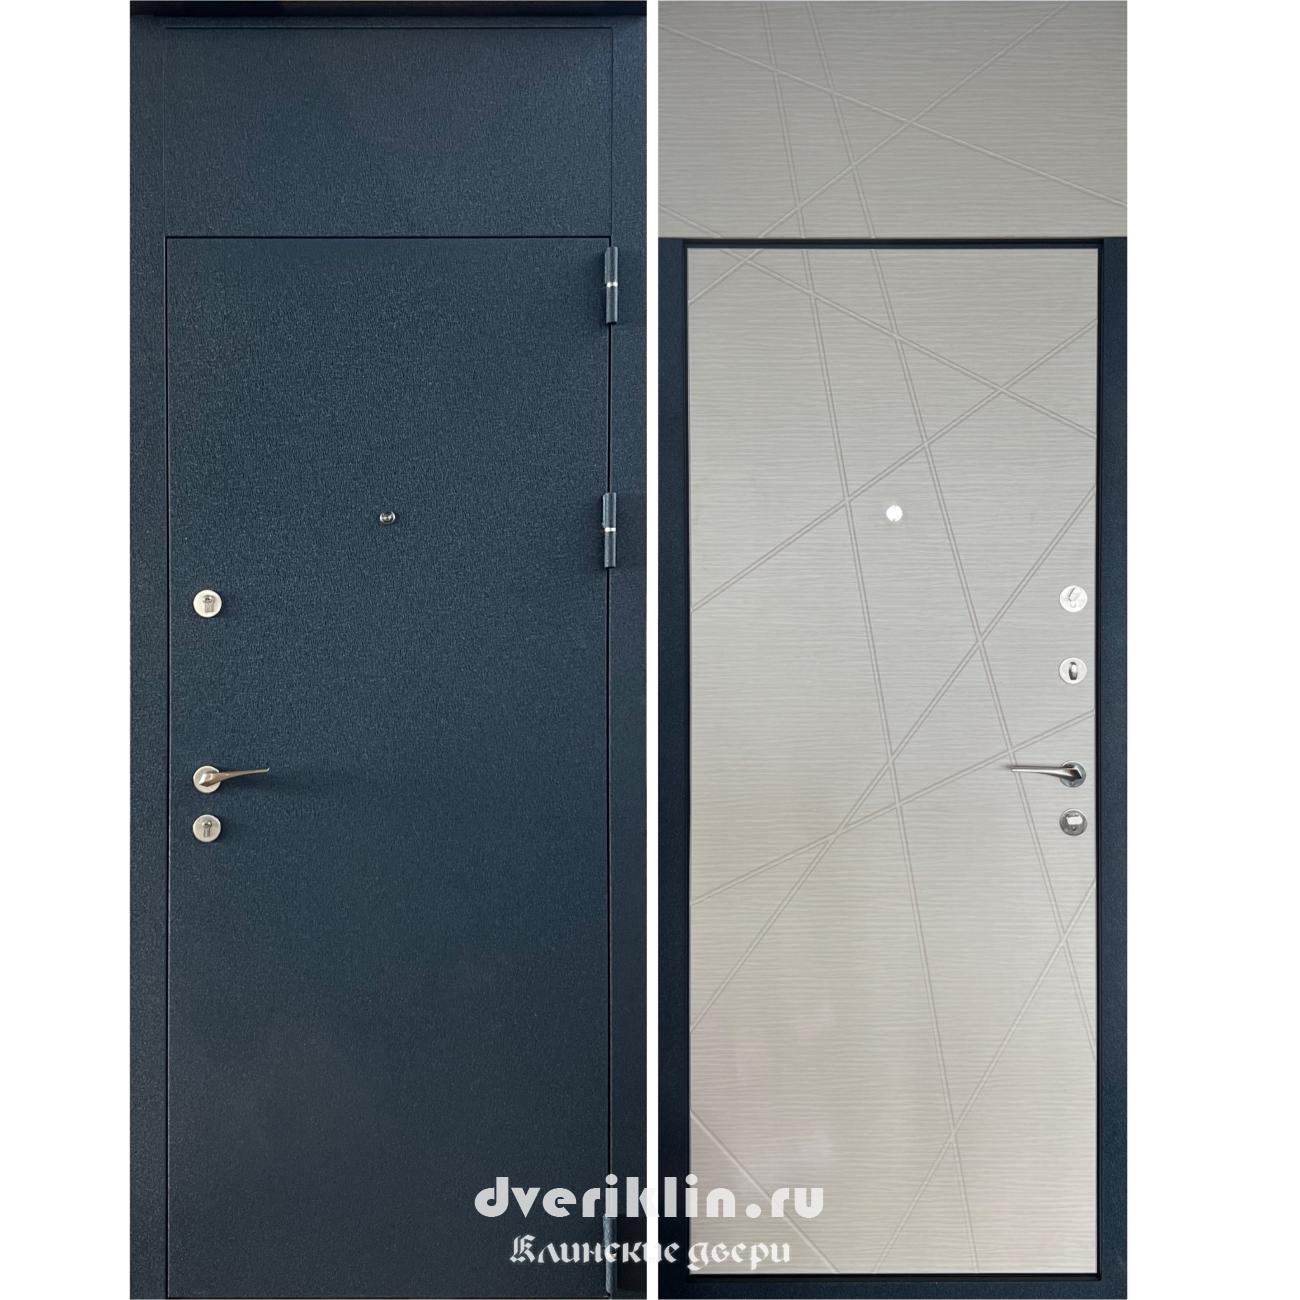 Дверь с верхней фрамугой DFR-10 (С фрамугой)